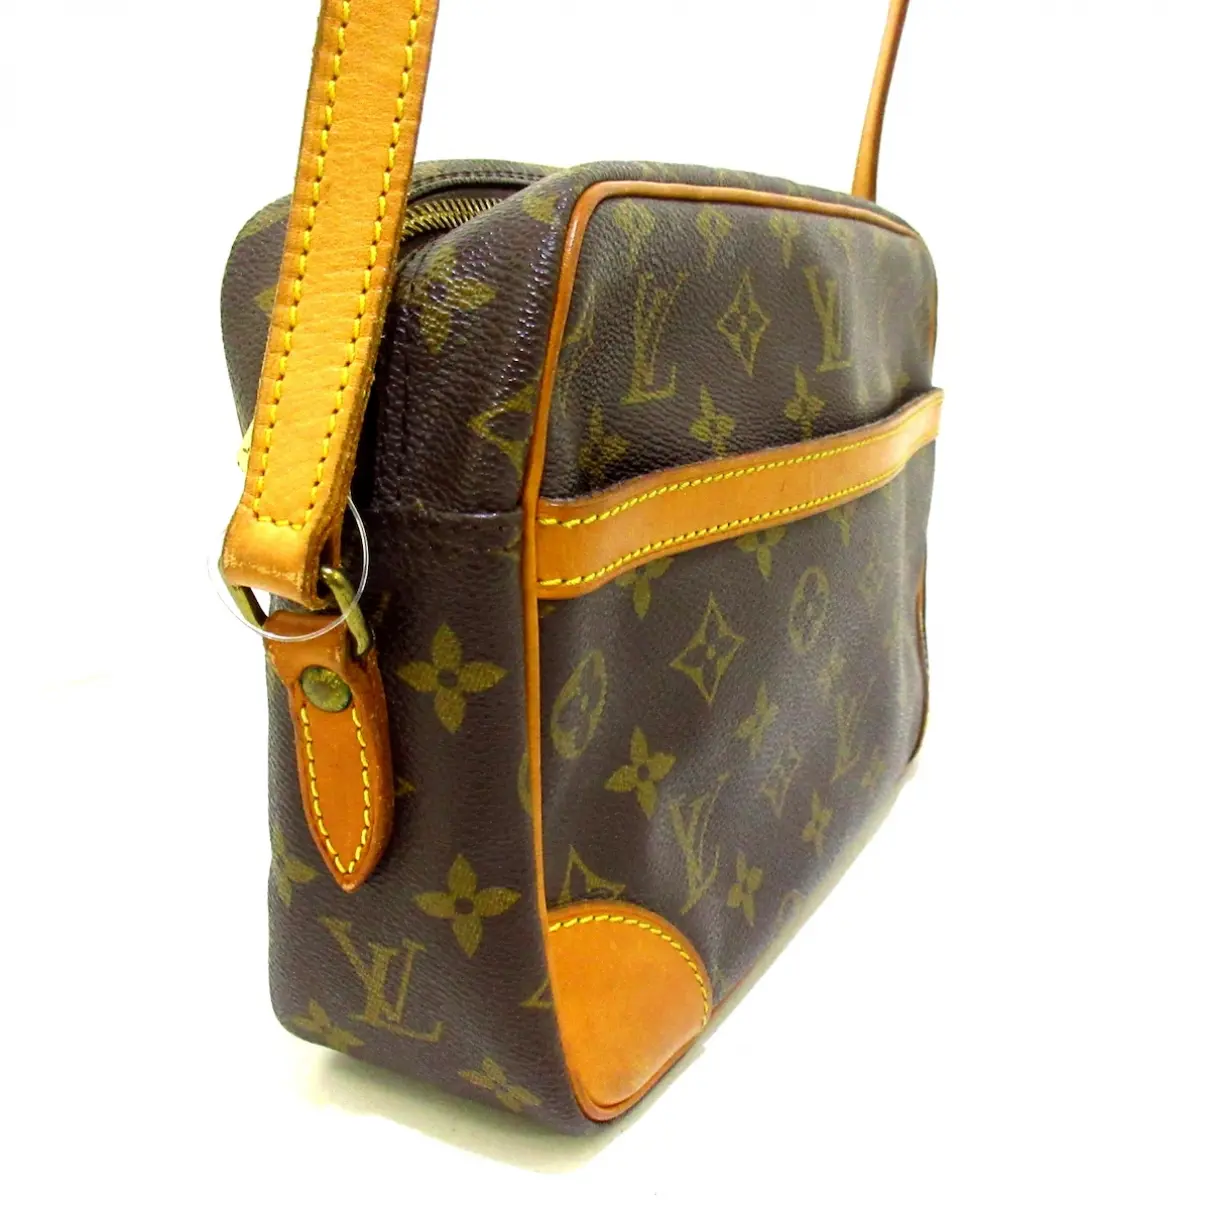 Buy Louis Vuitton Trocadéro cloth handbag online